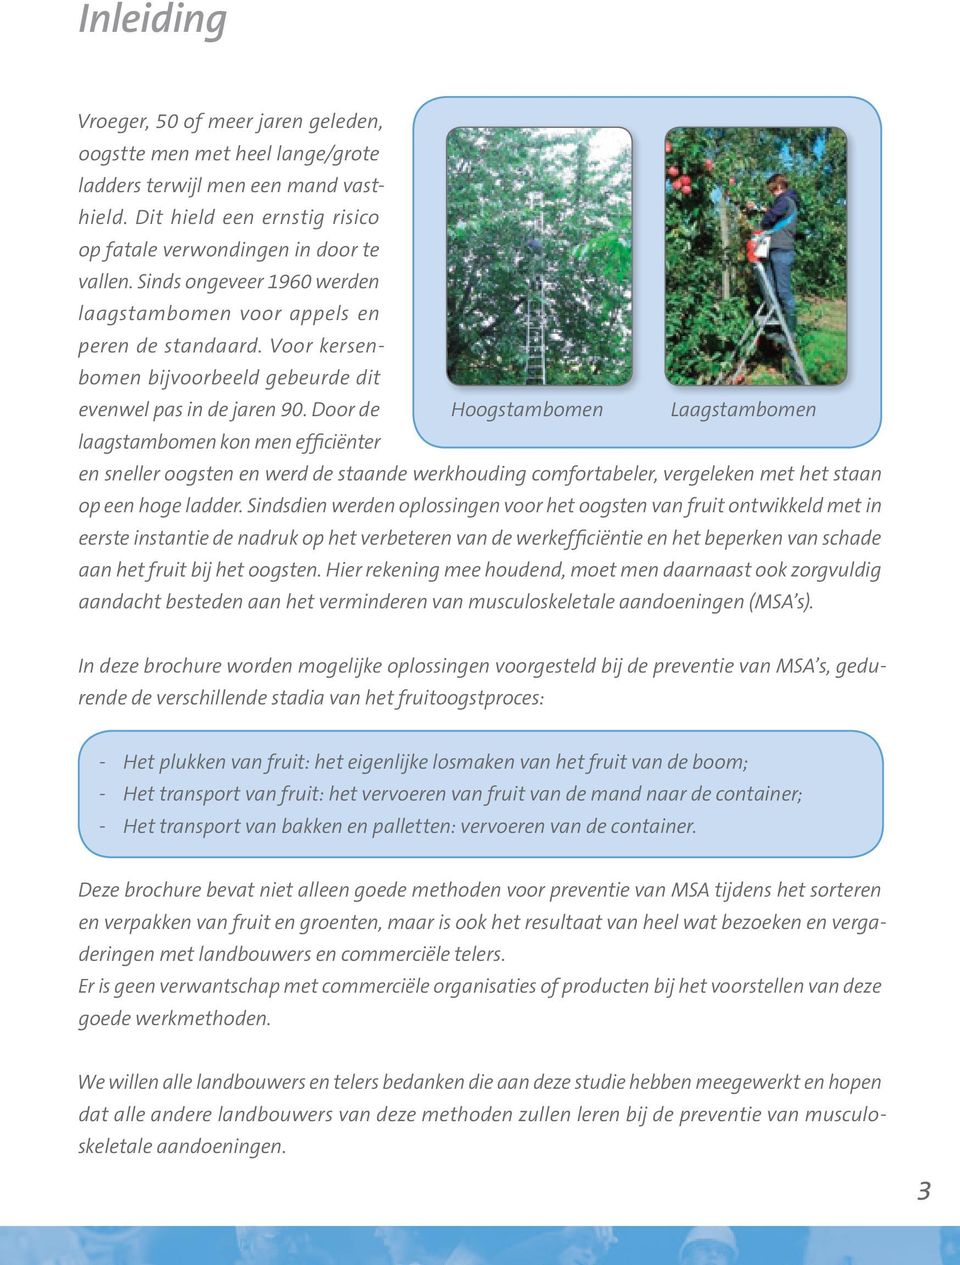 Door de laagstambomen kon men efficiënter Hoogstambomen Laagstambomen en sneller oogsten en werd de staande werkhouding comfortabeler, vergeleken met het staan op een hoge ladder.